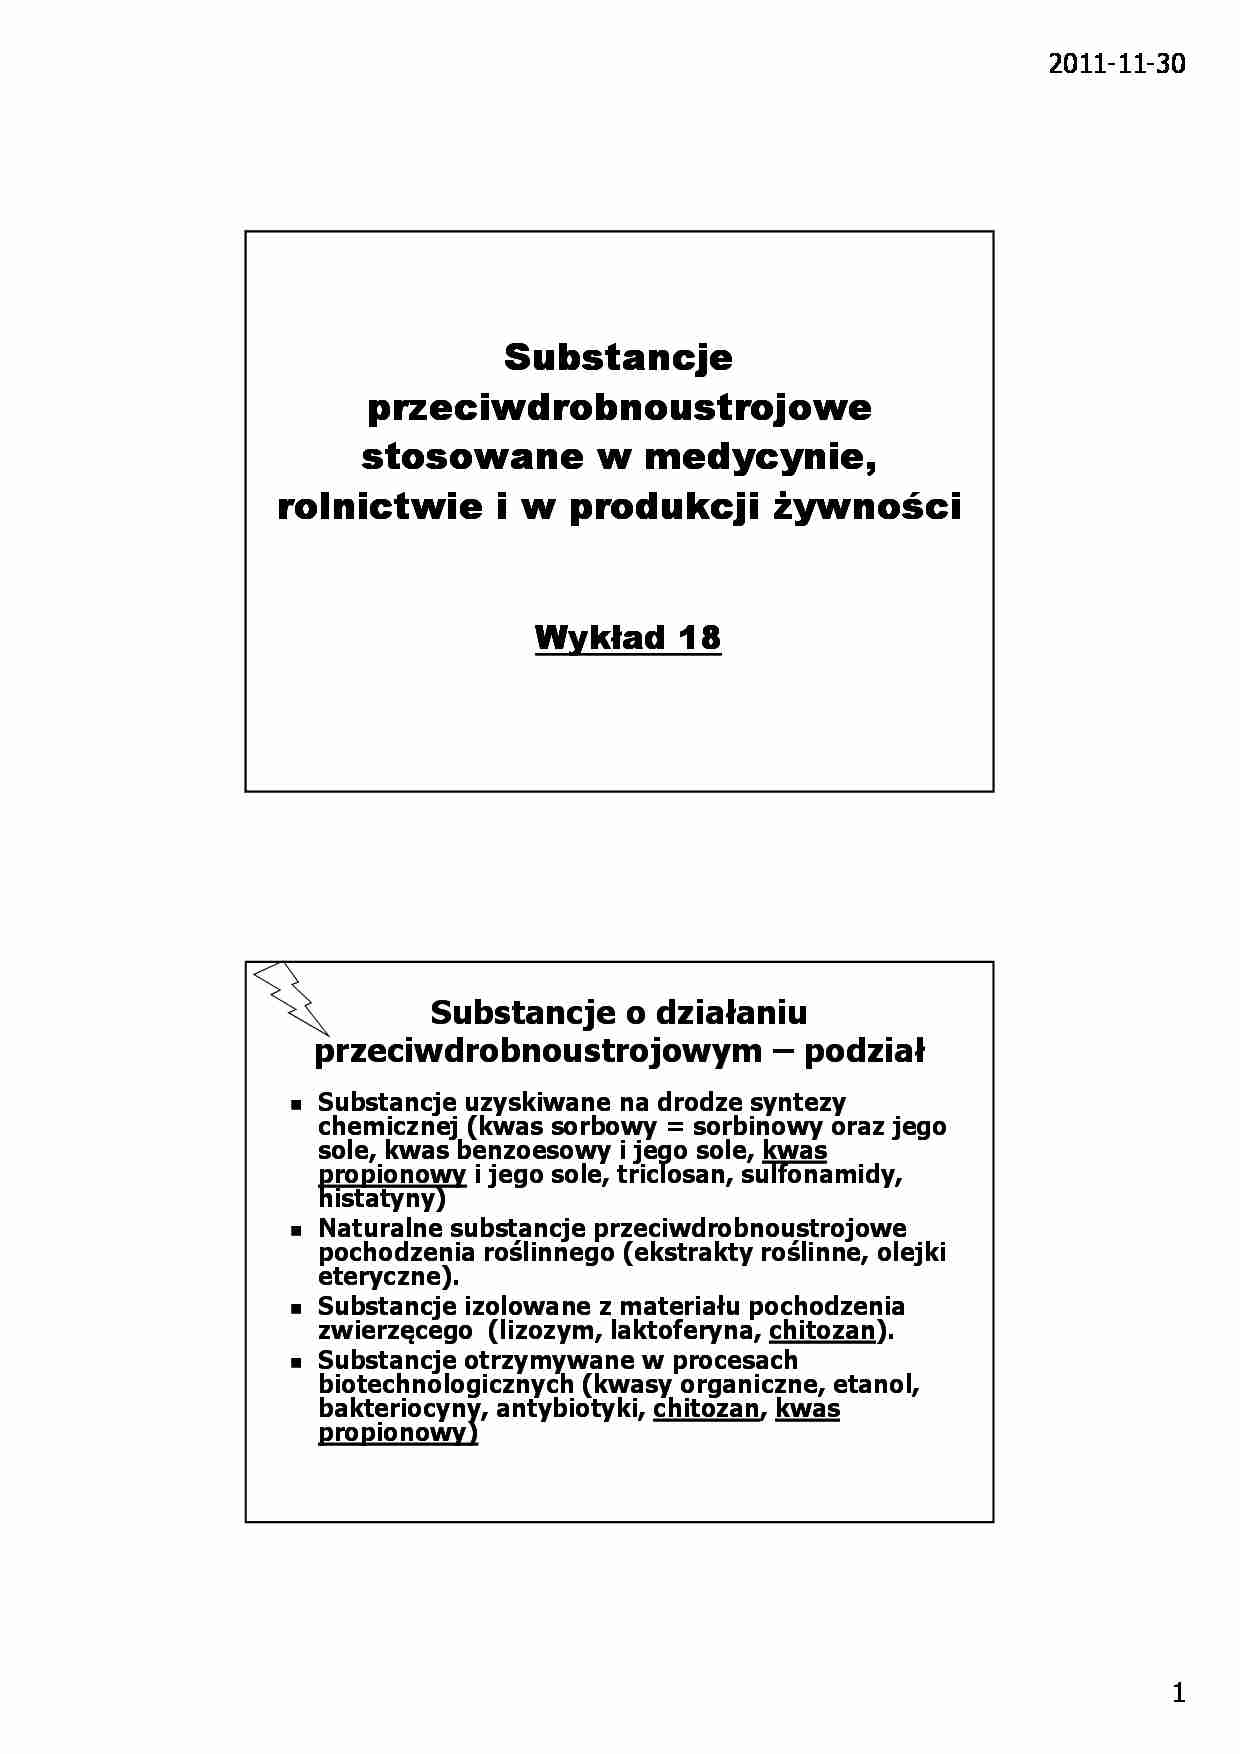 Substancje przeciwdrobnoustrojowe stosowane w medycynie, rolnictwie i w produkcji ywności- wykład 18 - strona 1